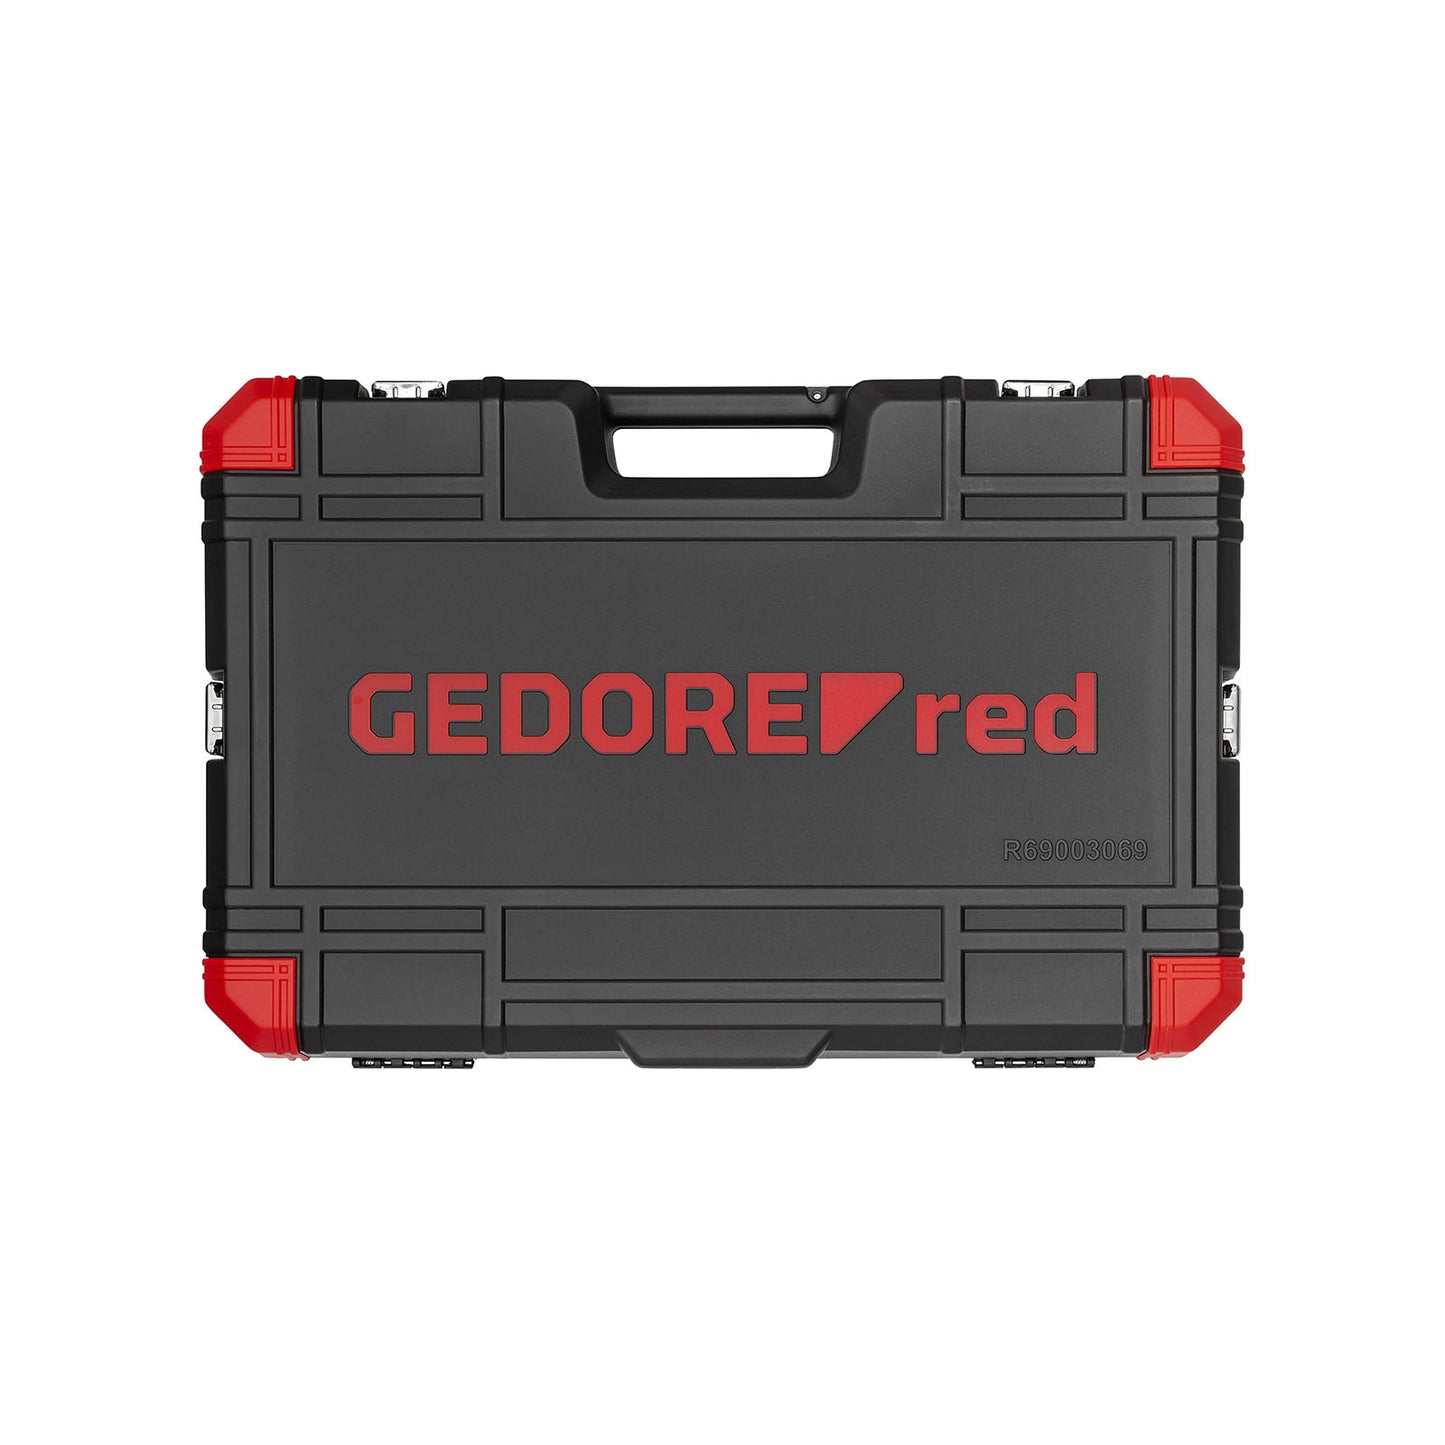 GEDORE red R69003069 - Juego de llaves de vaso 1/2" 8-24mm (3300191)